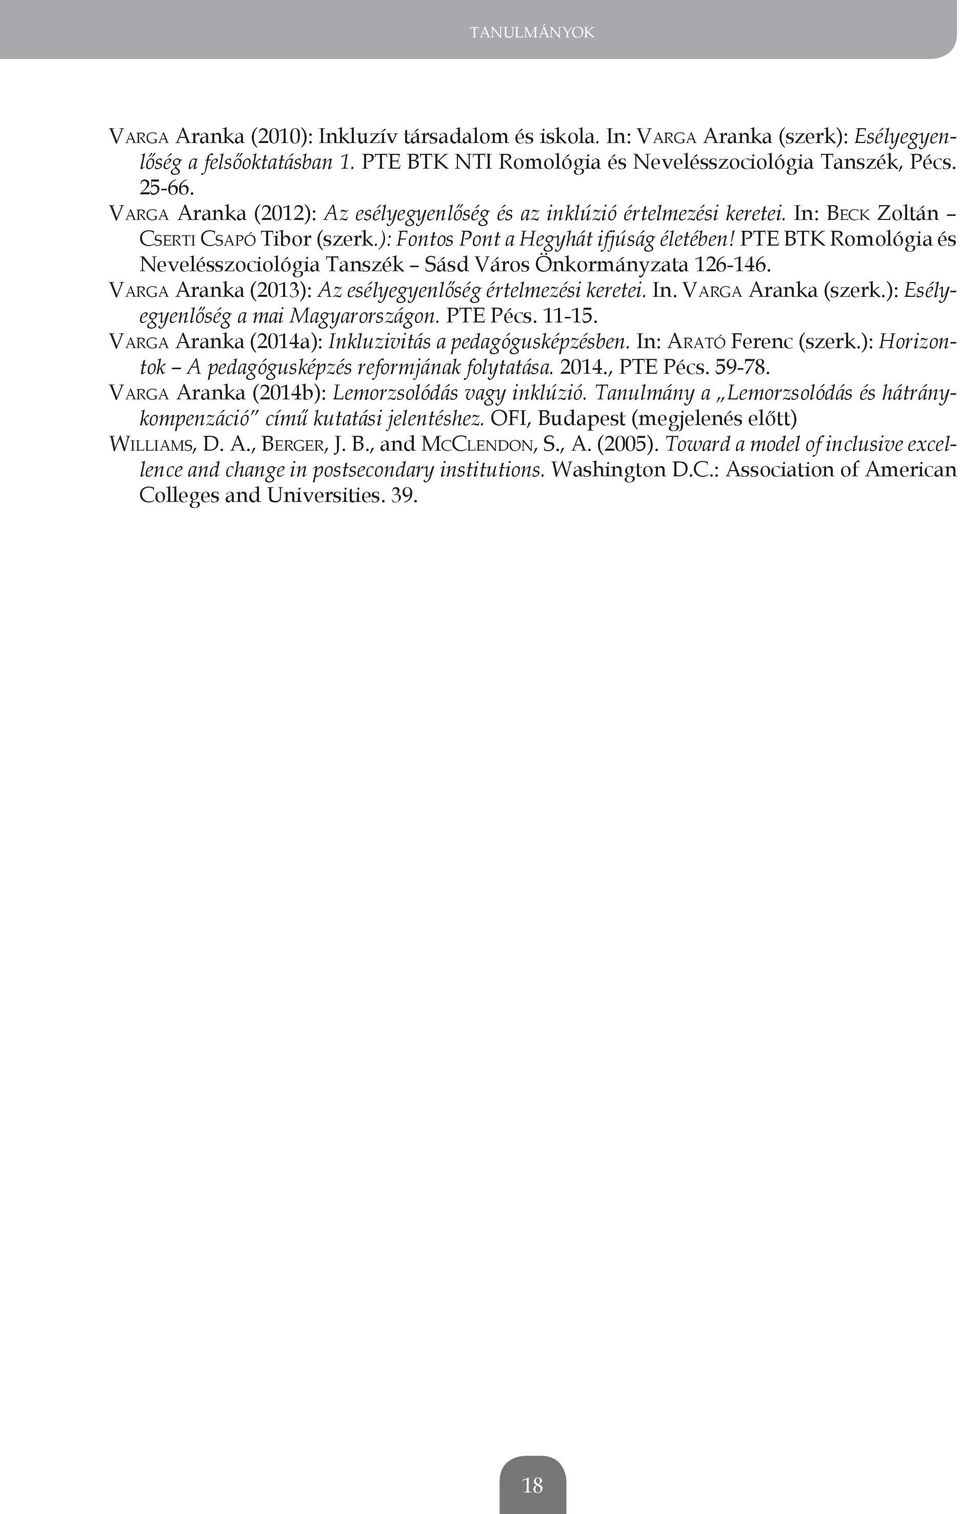 Pte BtK Romológia és nevelésszociológia tanszék sásd Város Önkormányzata 126-146. VARGA Aranka (2013): Az esélyegyenlőség értelmezési keretei. In. VARGA Aranka (szerk.